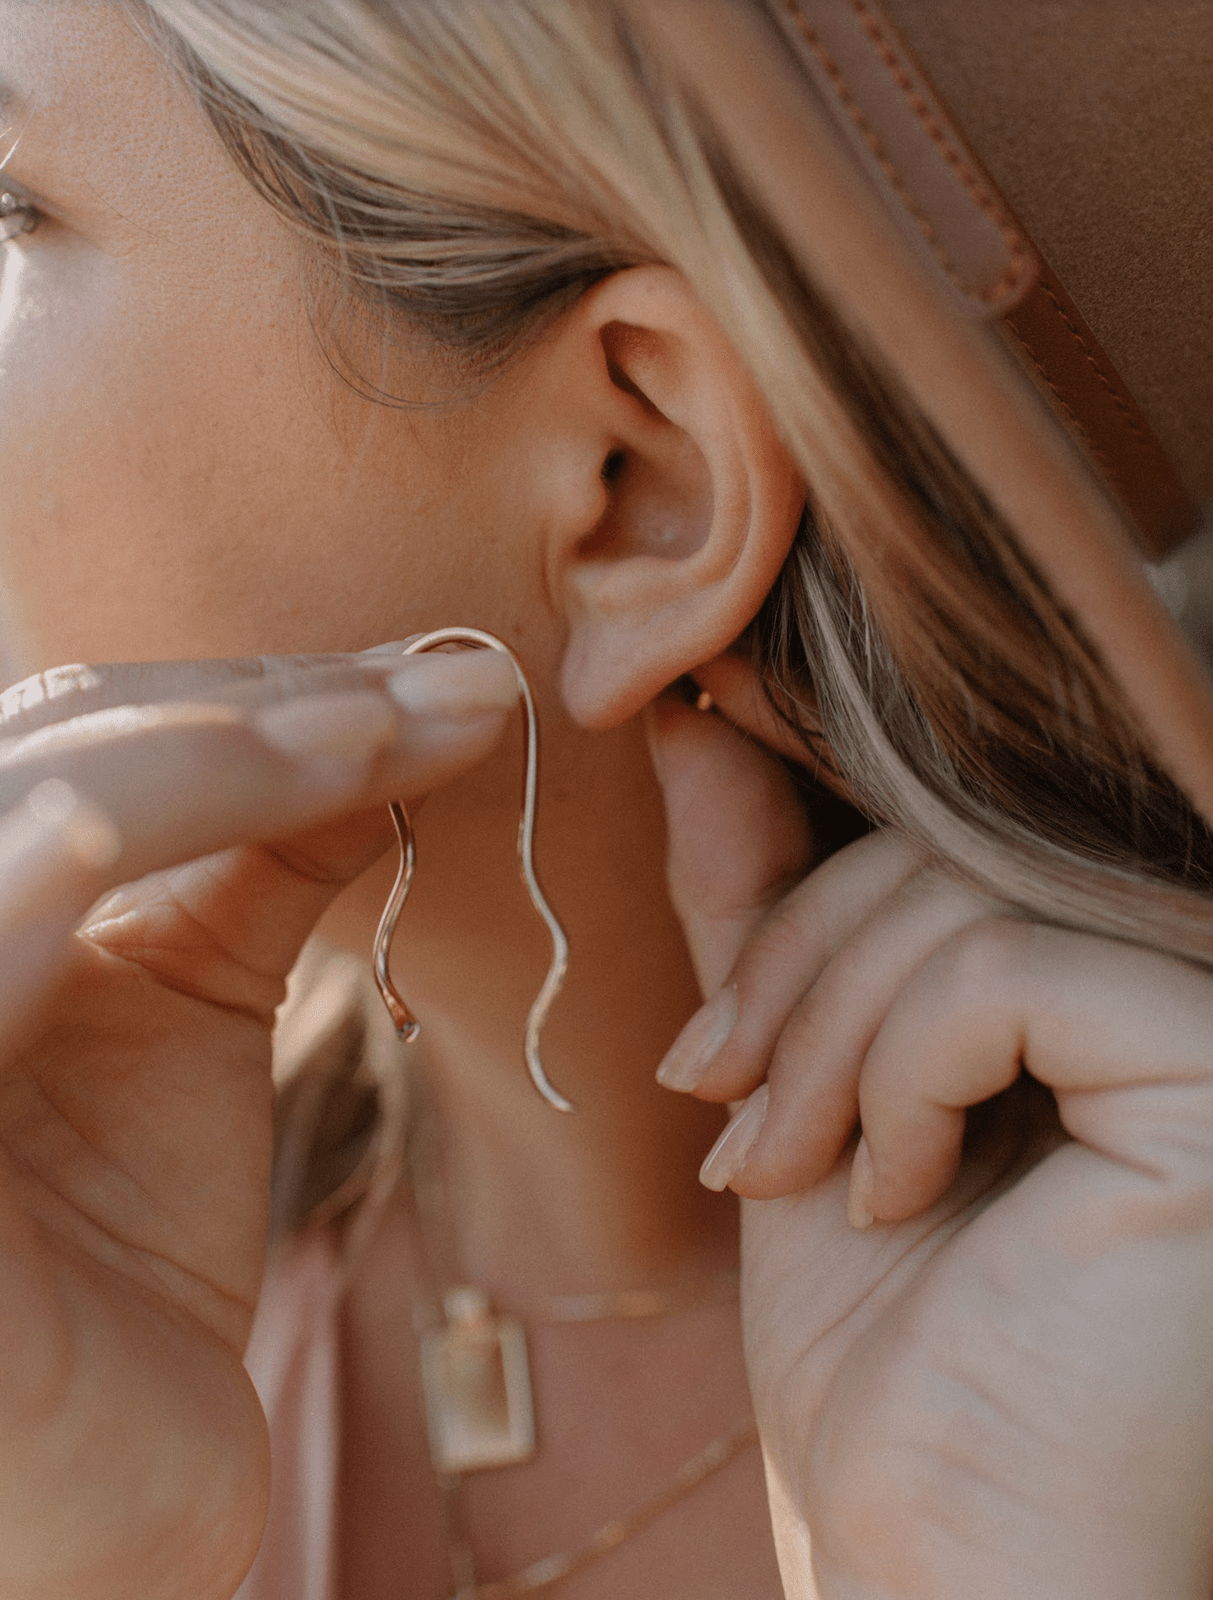 Sylvie Serpent Studs Earrings